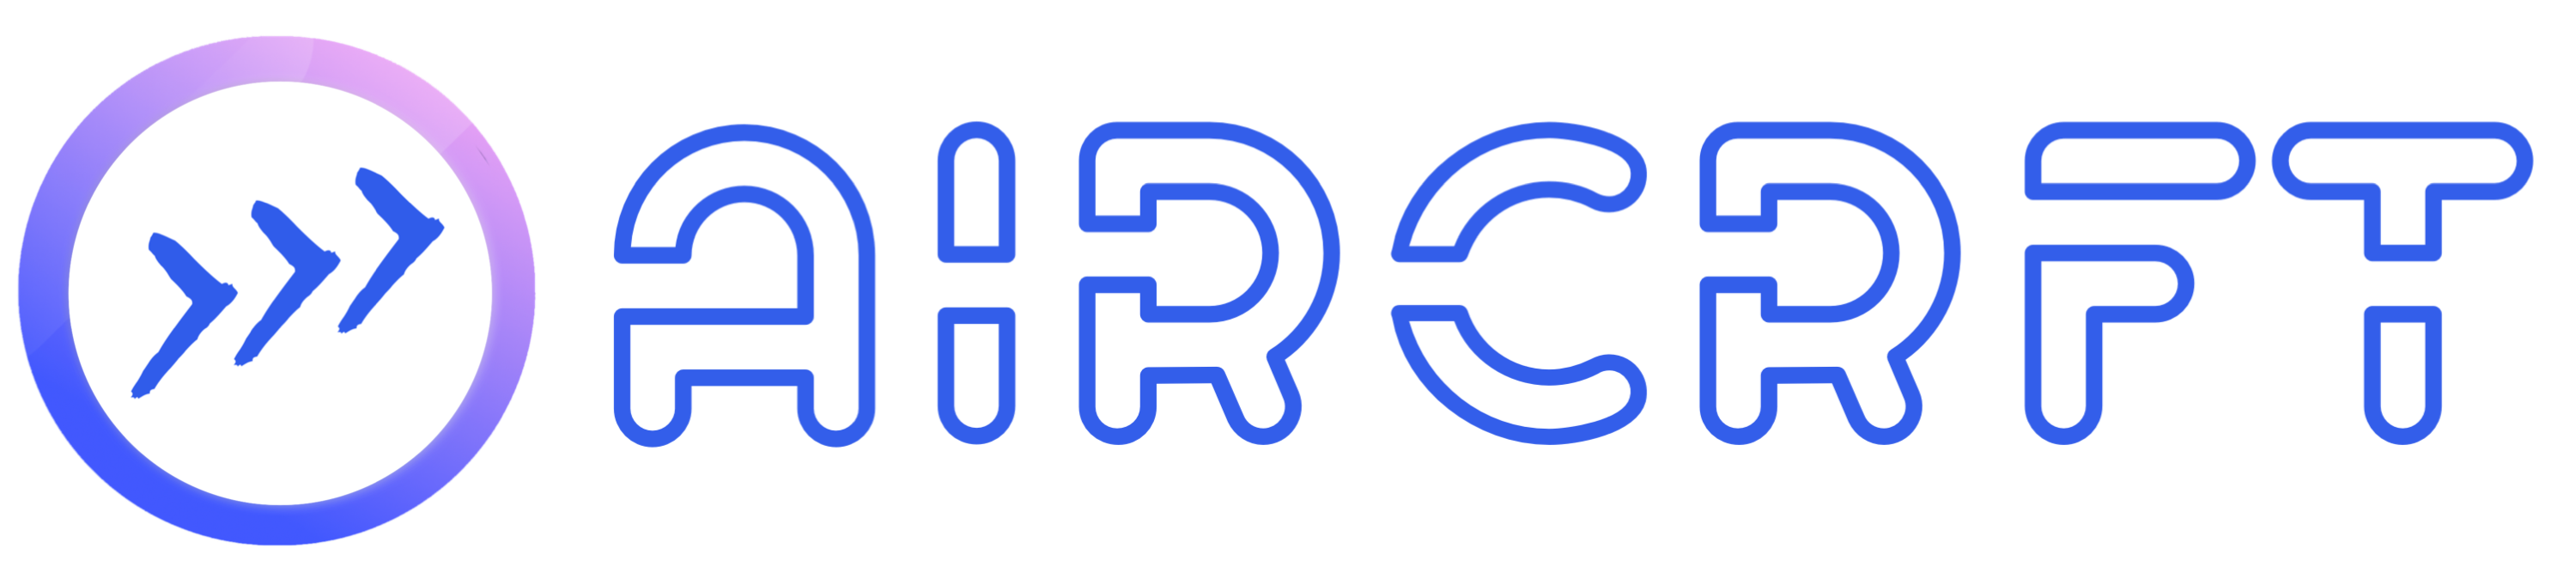 AIRCRFT Sidebar Logo